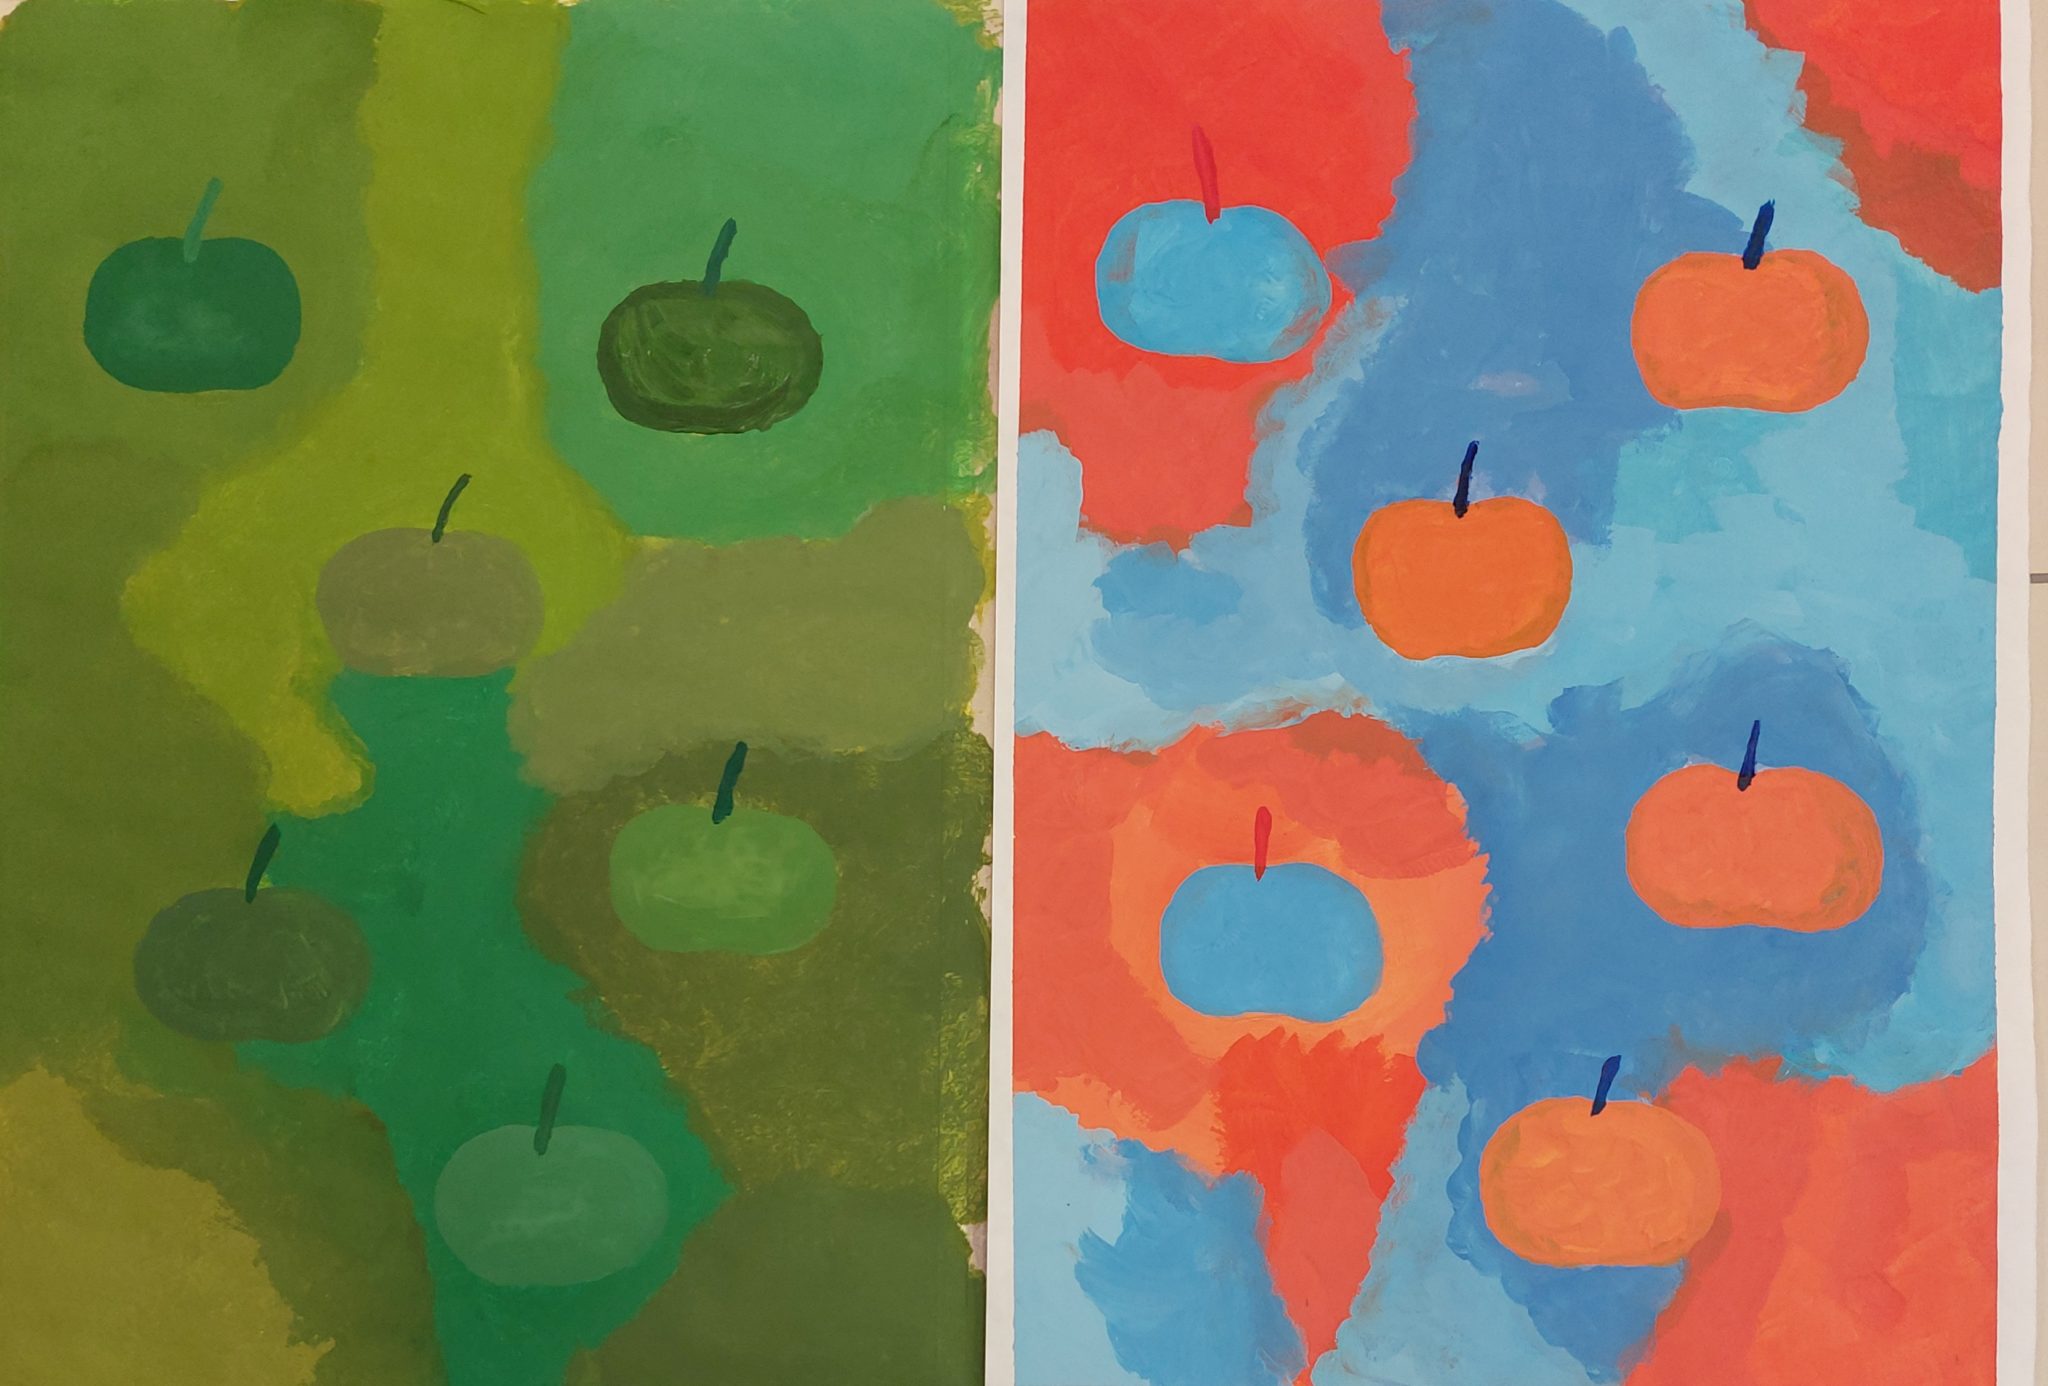 Kaksi maalausta vierekkäin. Vihreällä pohjalla on vihreitä omenoita ja puna-sinisellä pohjalla on sinisiä ja punaisia omenoita.